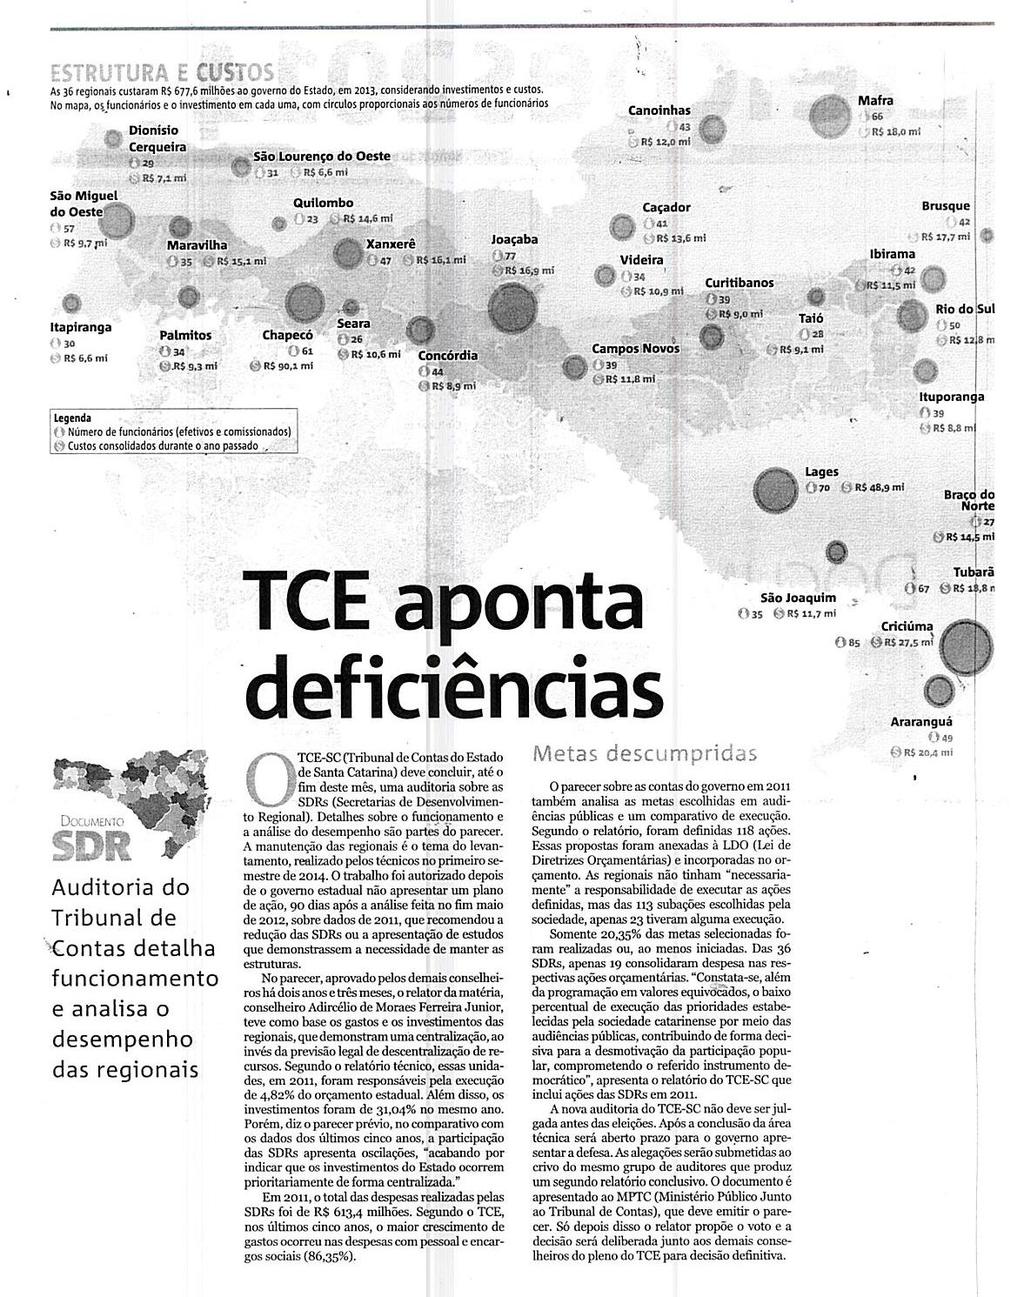 Notícias do Dia Eleições TCE aponta deficiências TCE aponta deficiências / Tribunal de Contas do Estado de Santa Catarina /